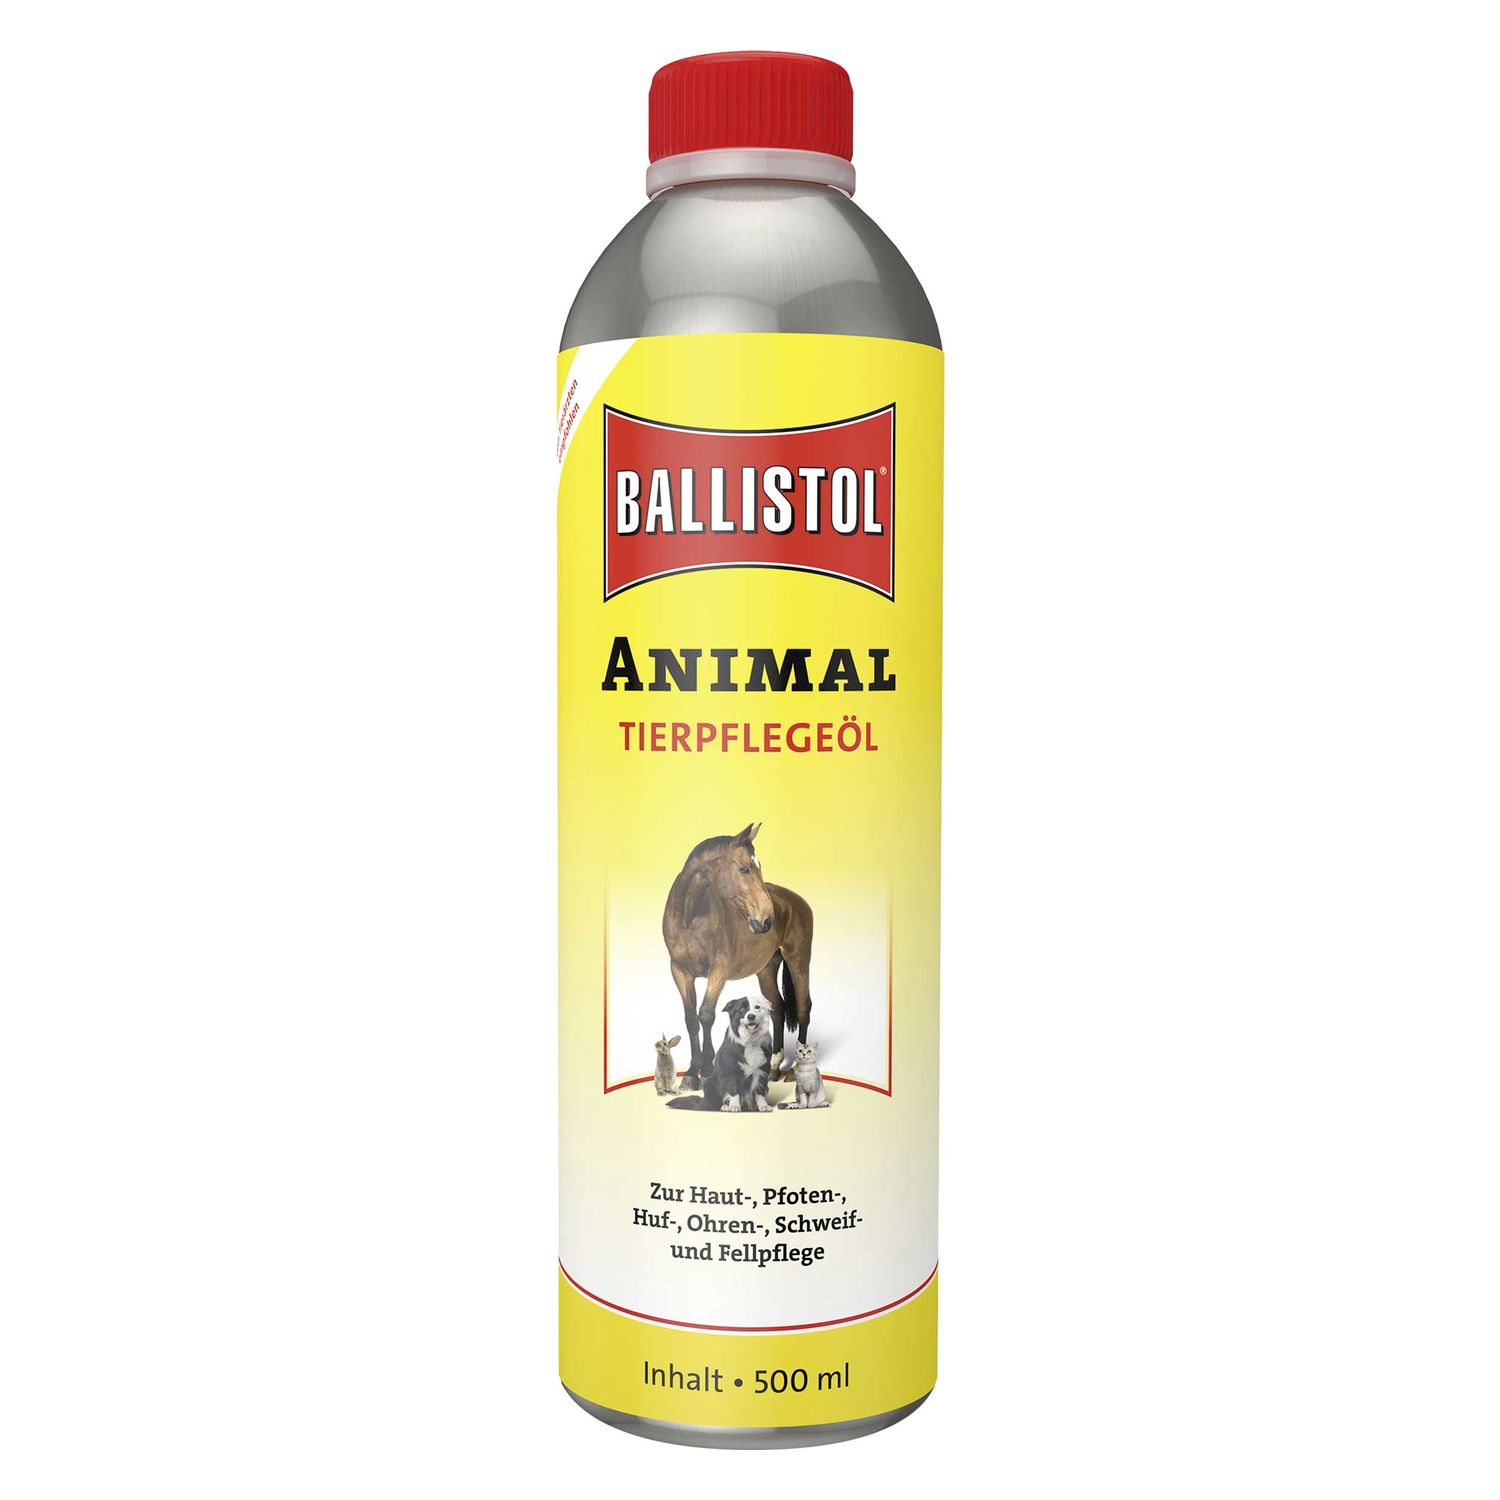 BALLISTOL Tierpflegeöl Animal 500 ml